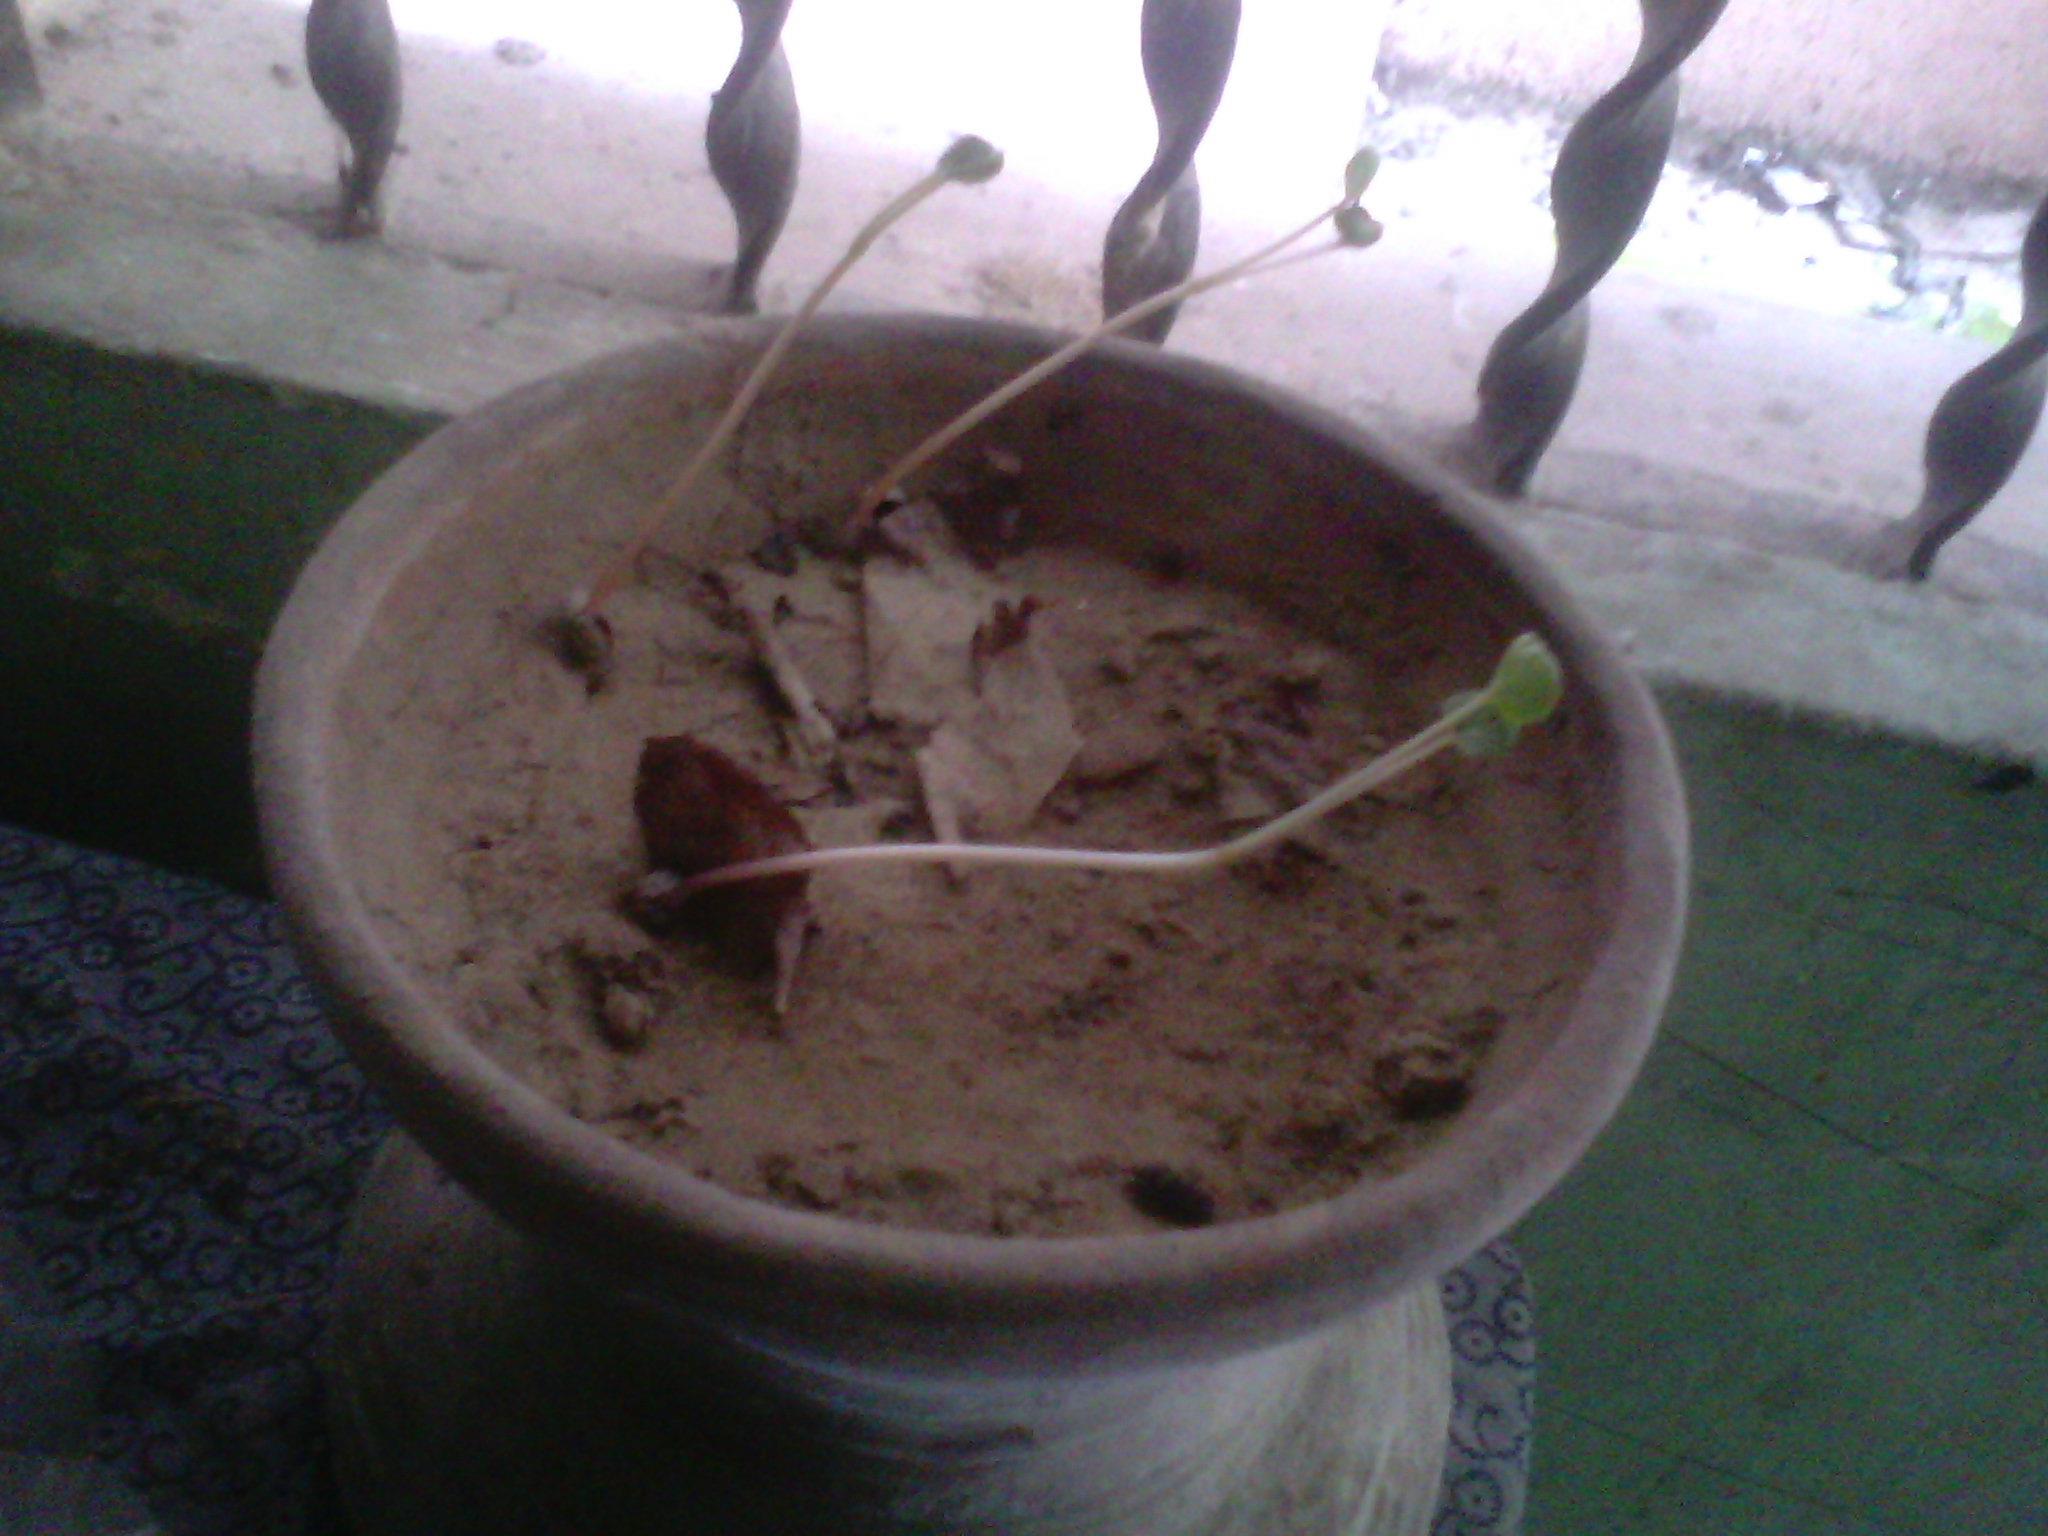 New Seedlings Have Grown in Ayesha’s Tub